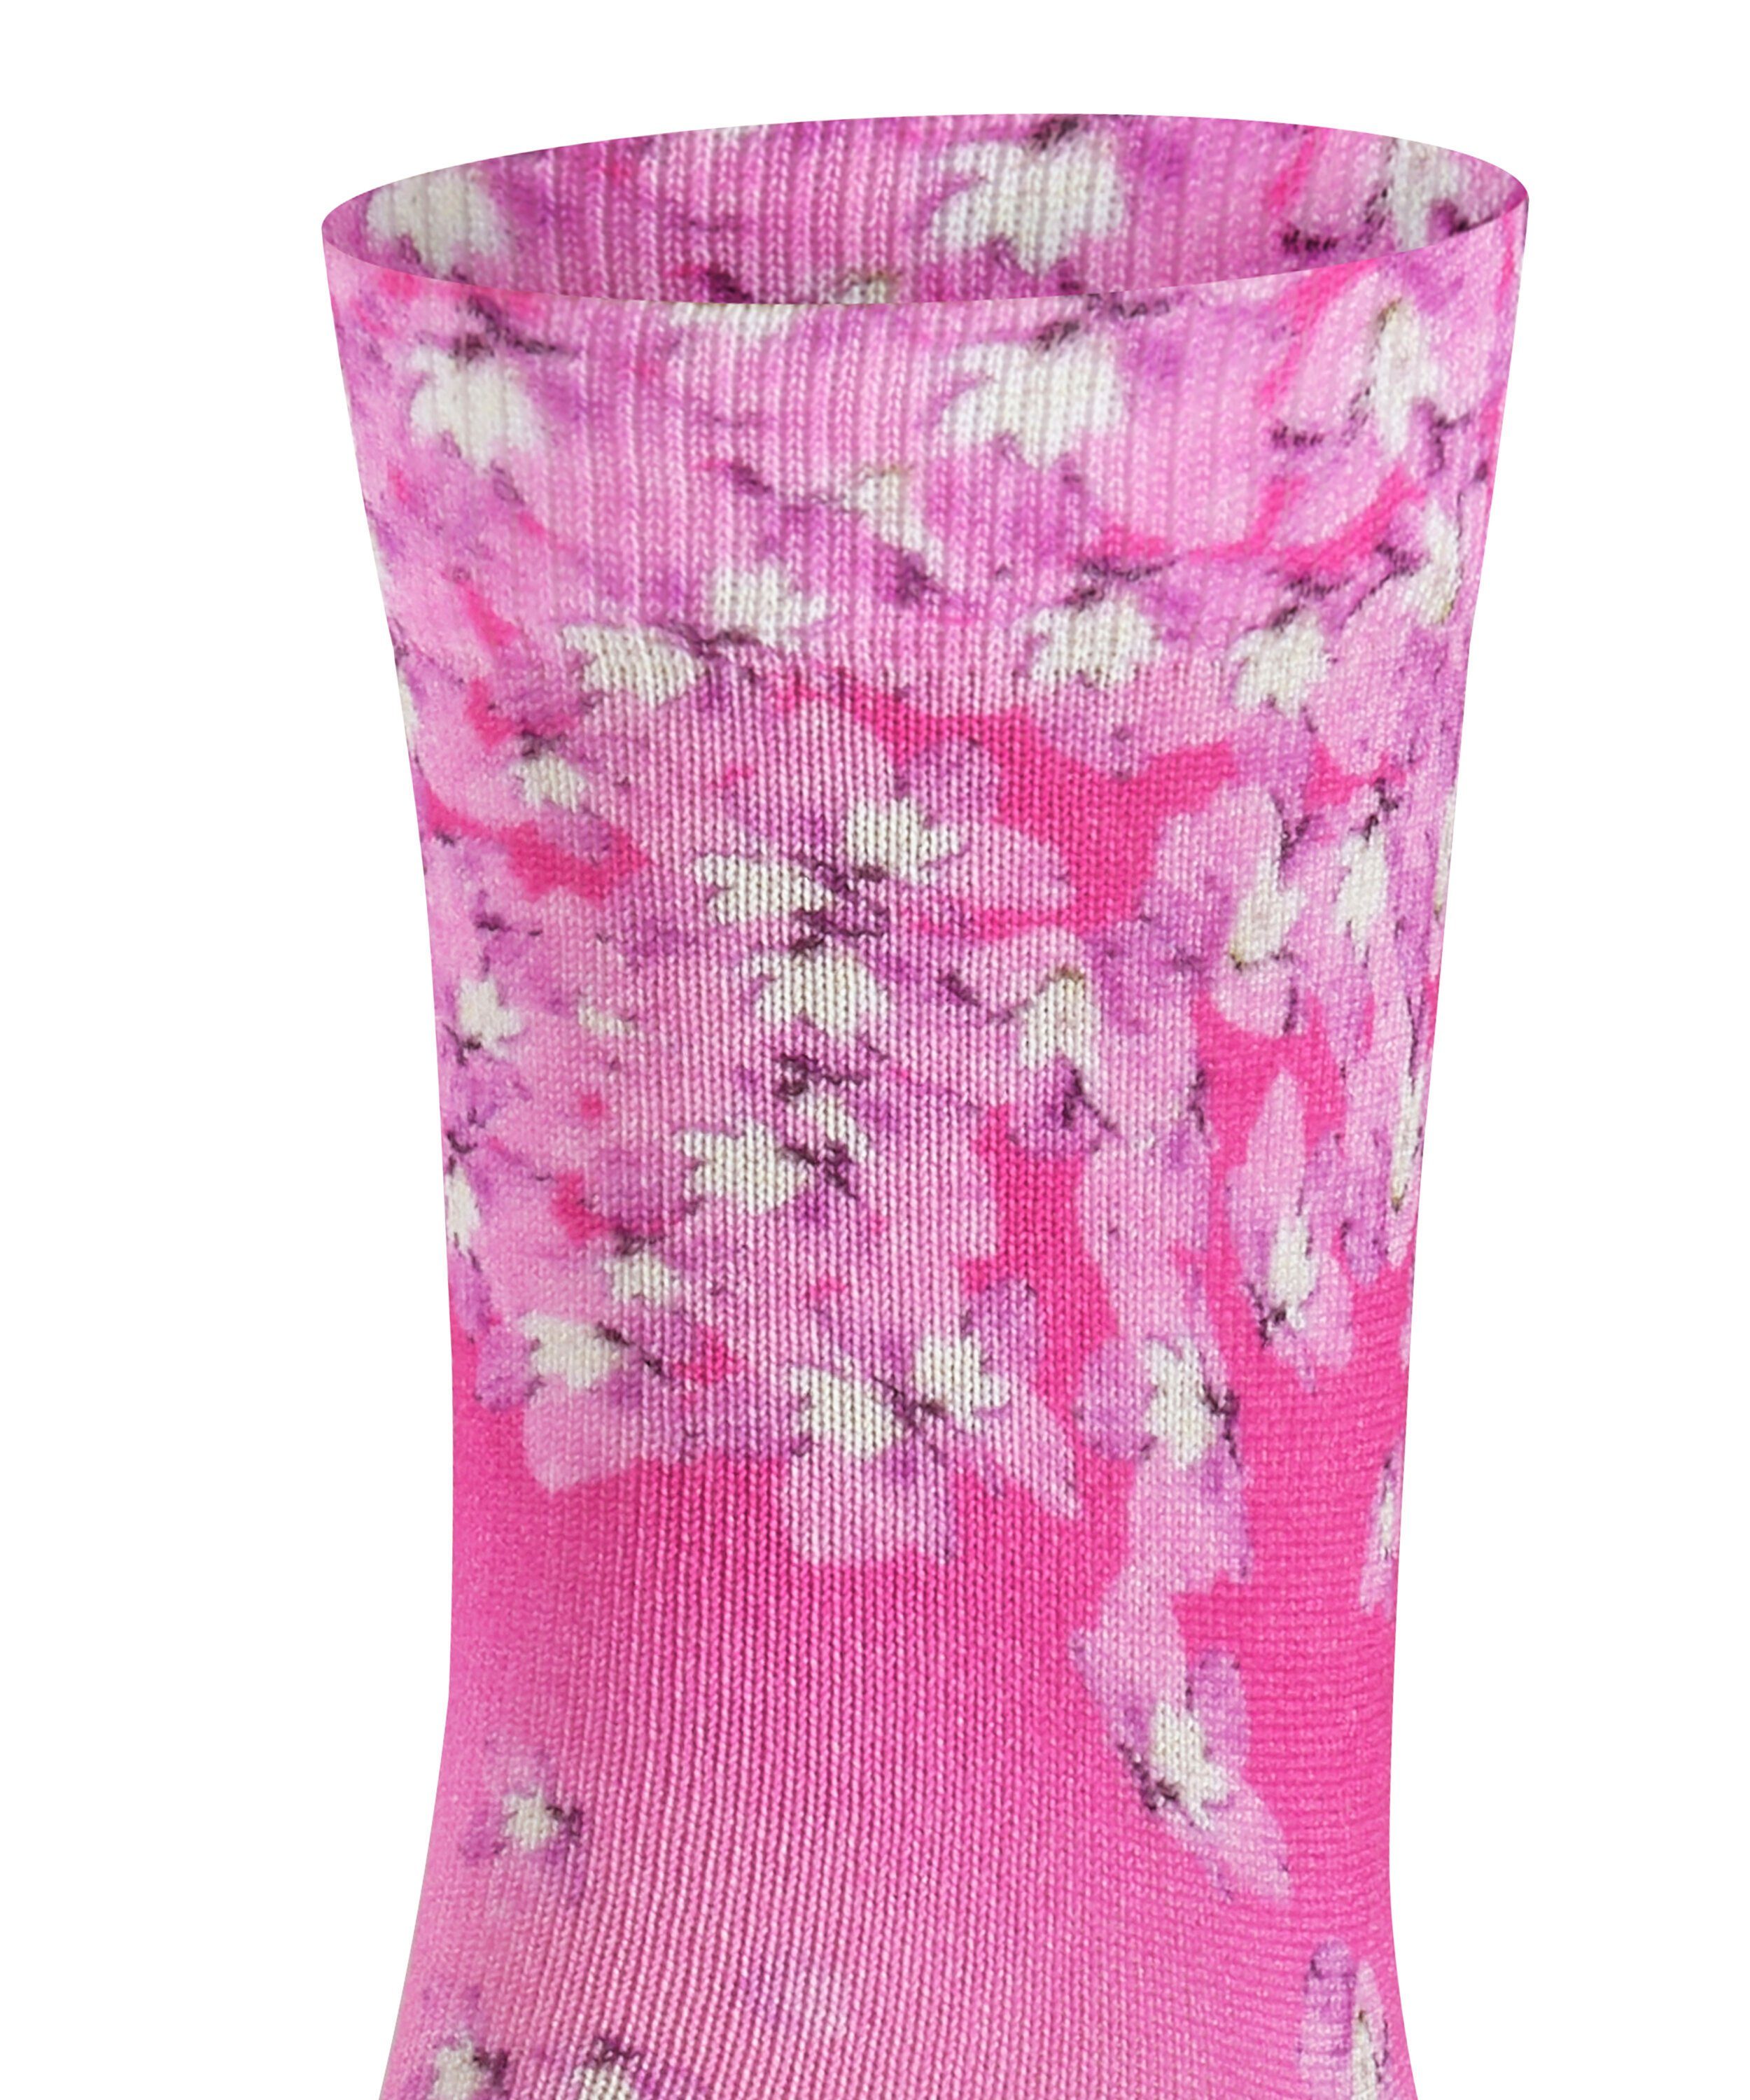 FALKE Socken Flower Print (1-Paar)